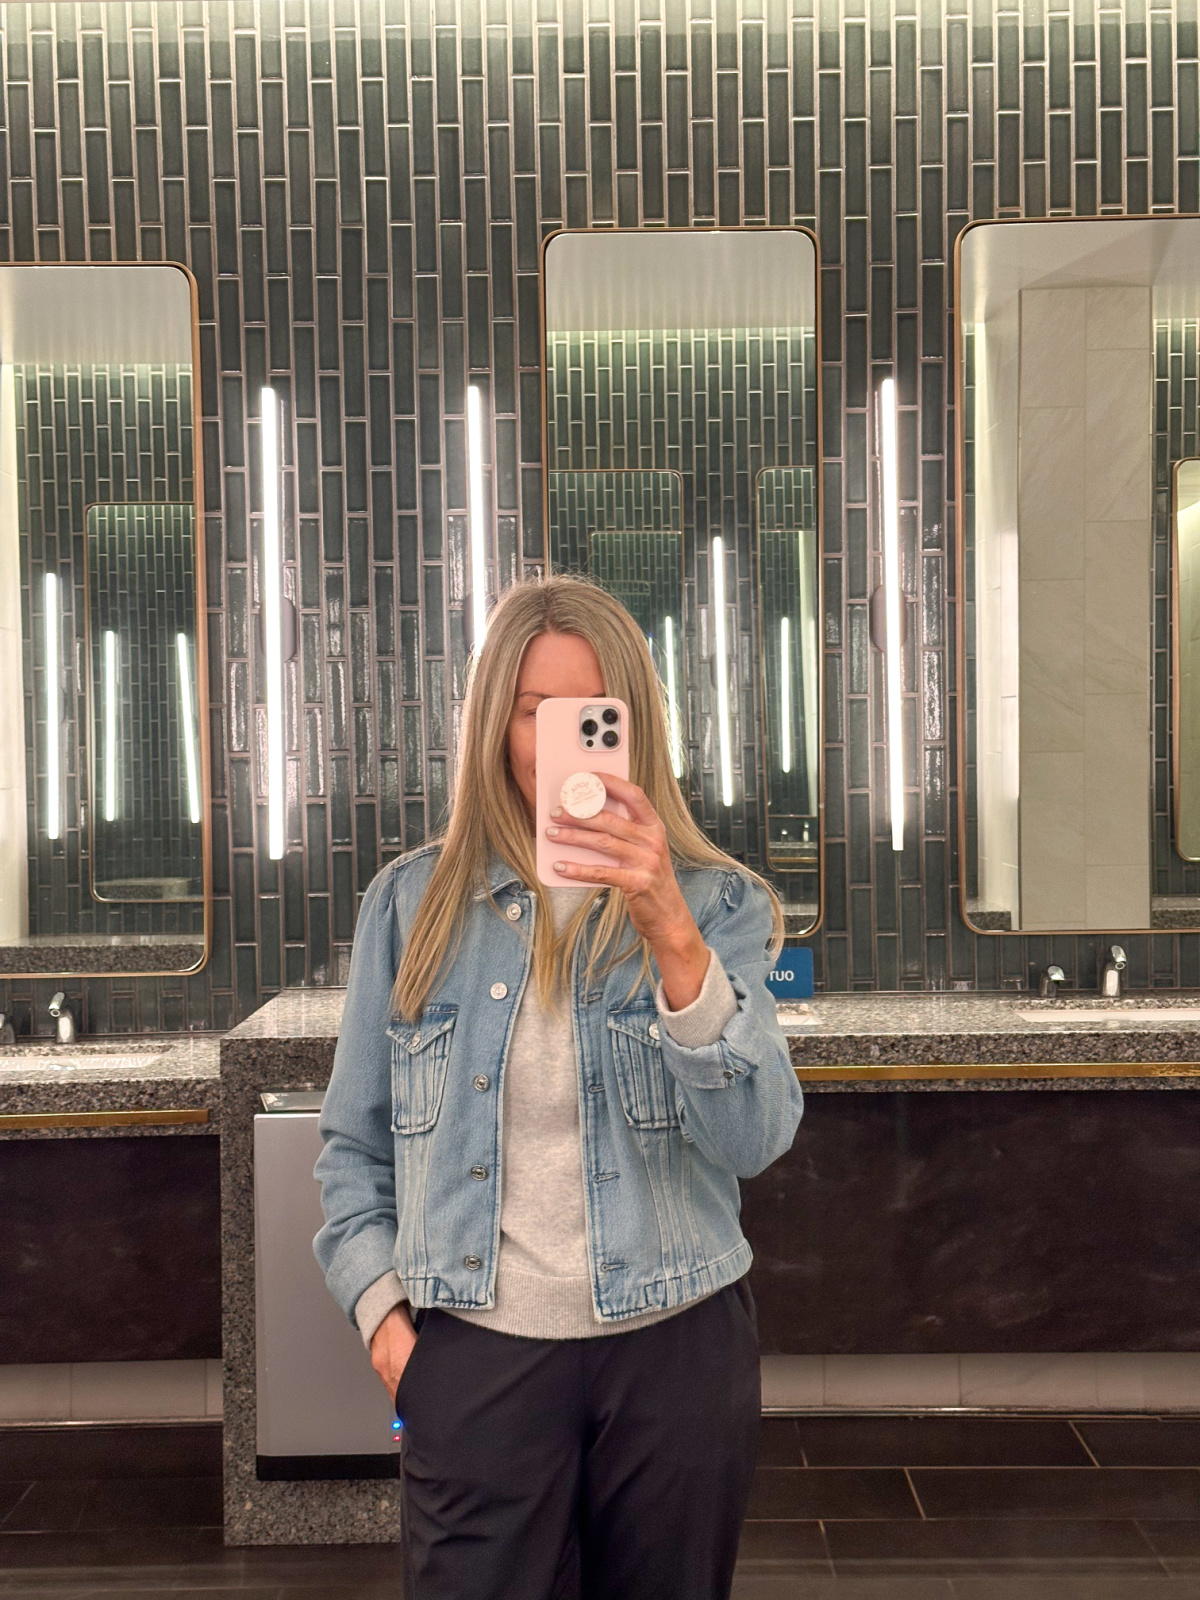 Woman taking mirror selfie in airport bathroom.